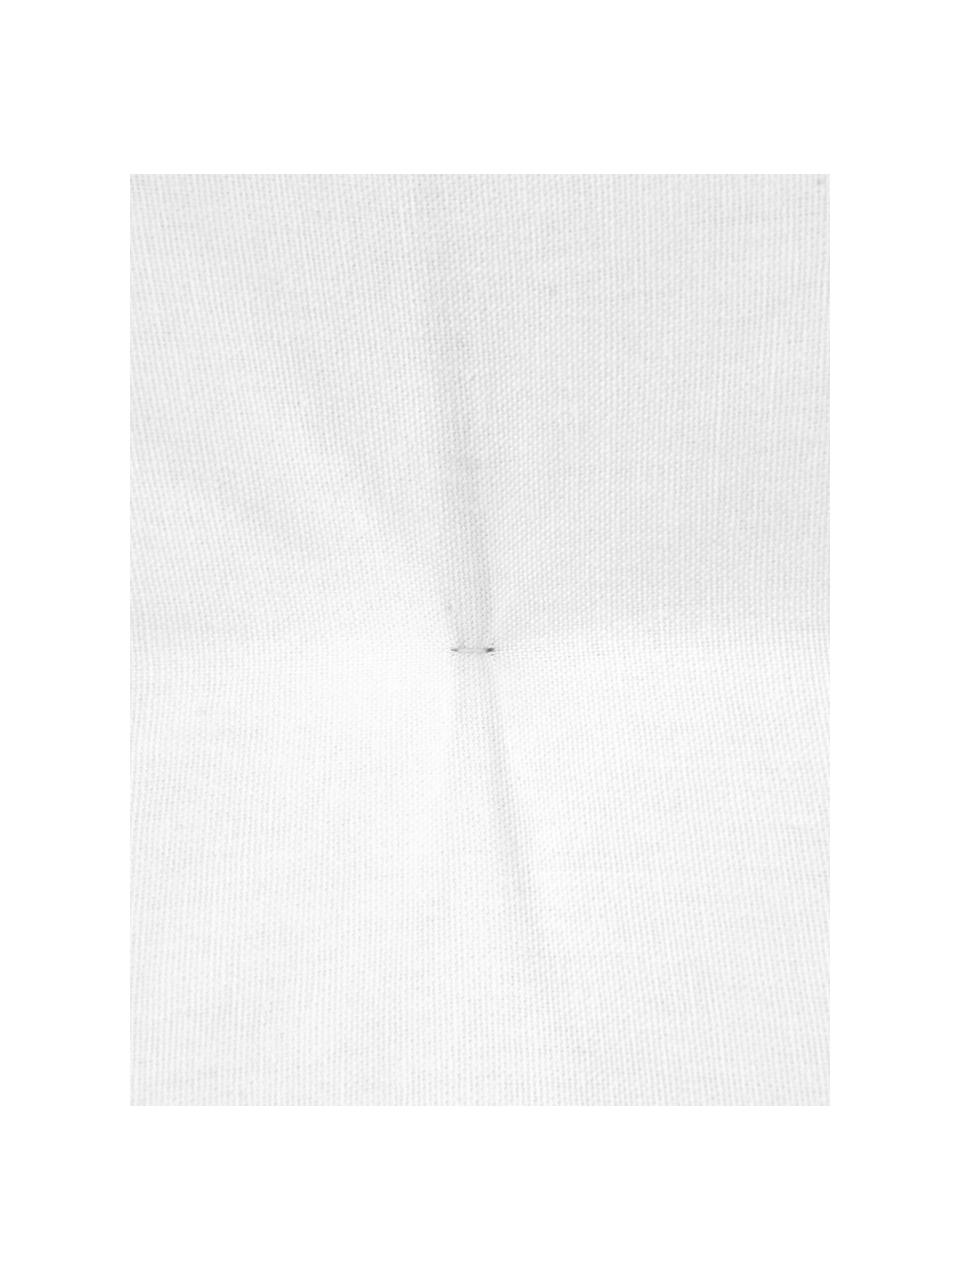 Cojín de asiento Kiara, Blanco crema, An 45 x L 45 cm